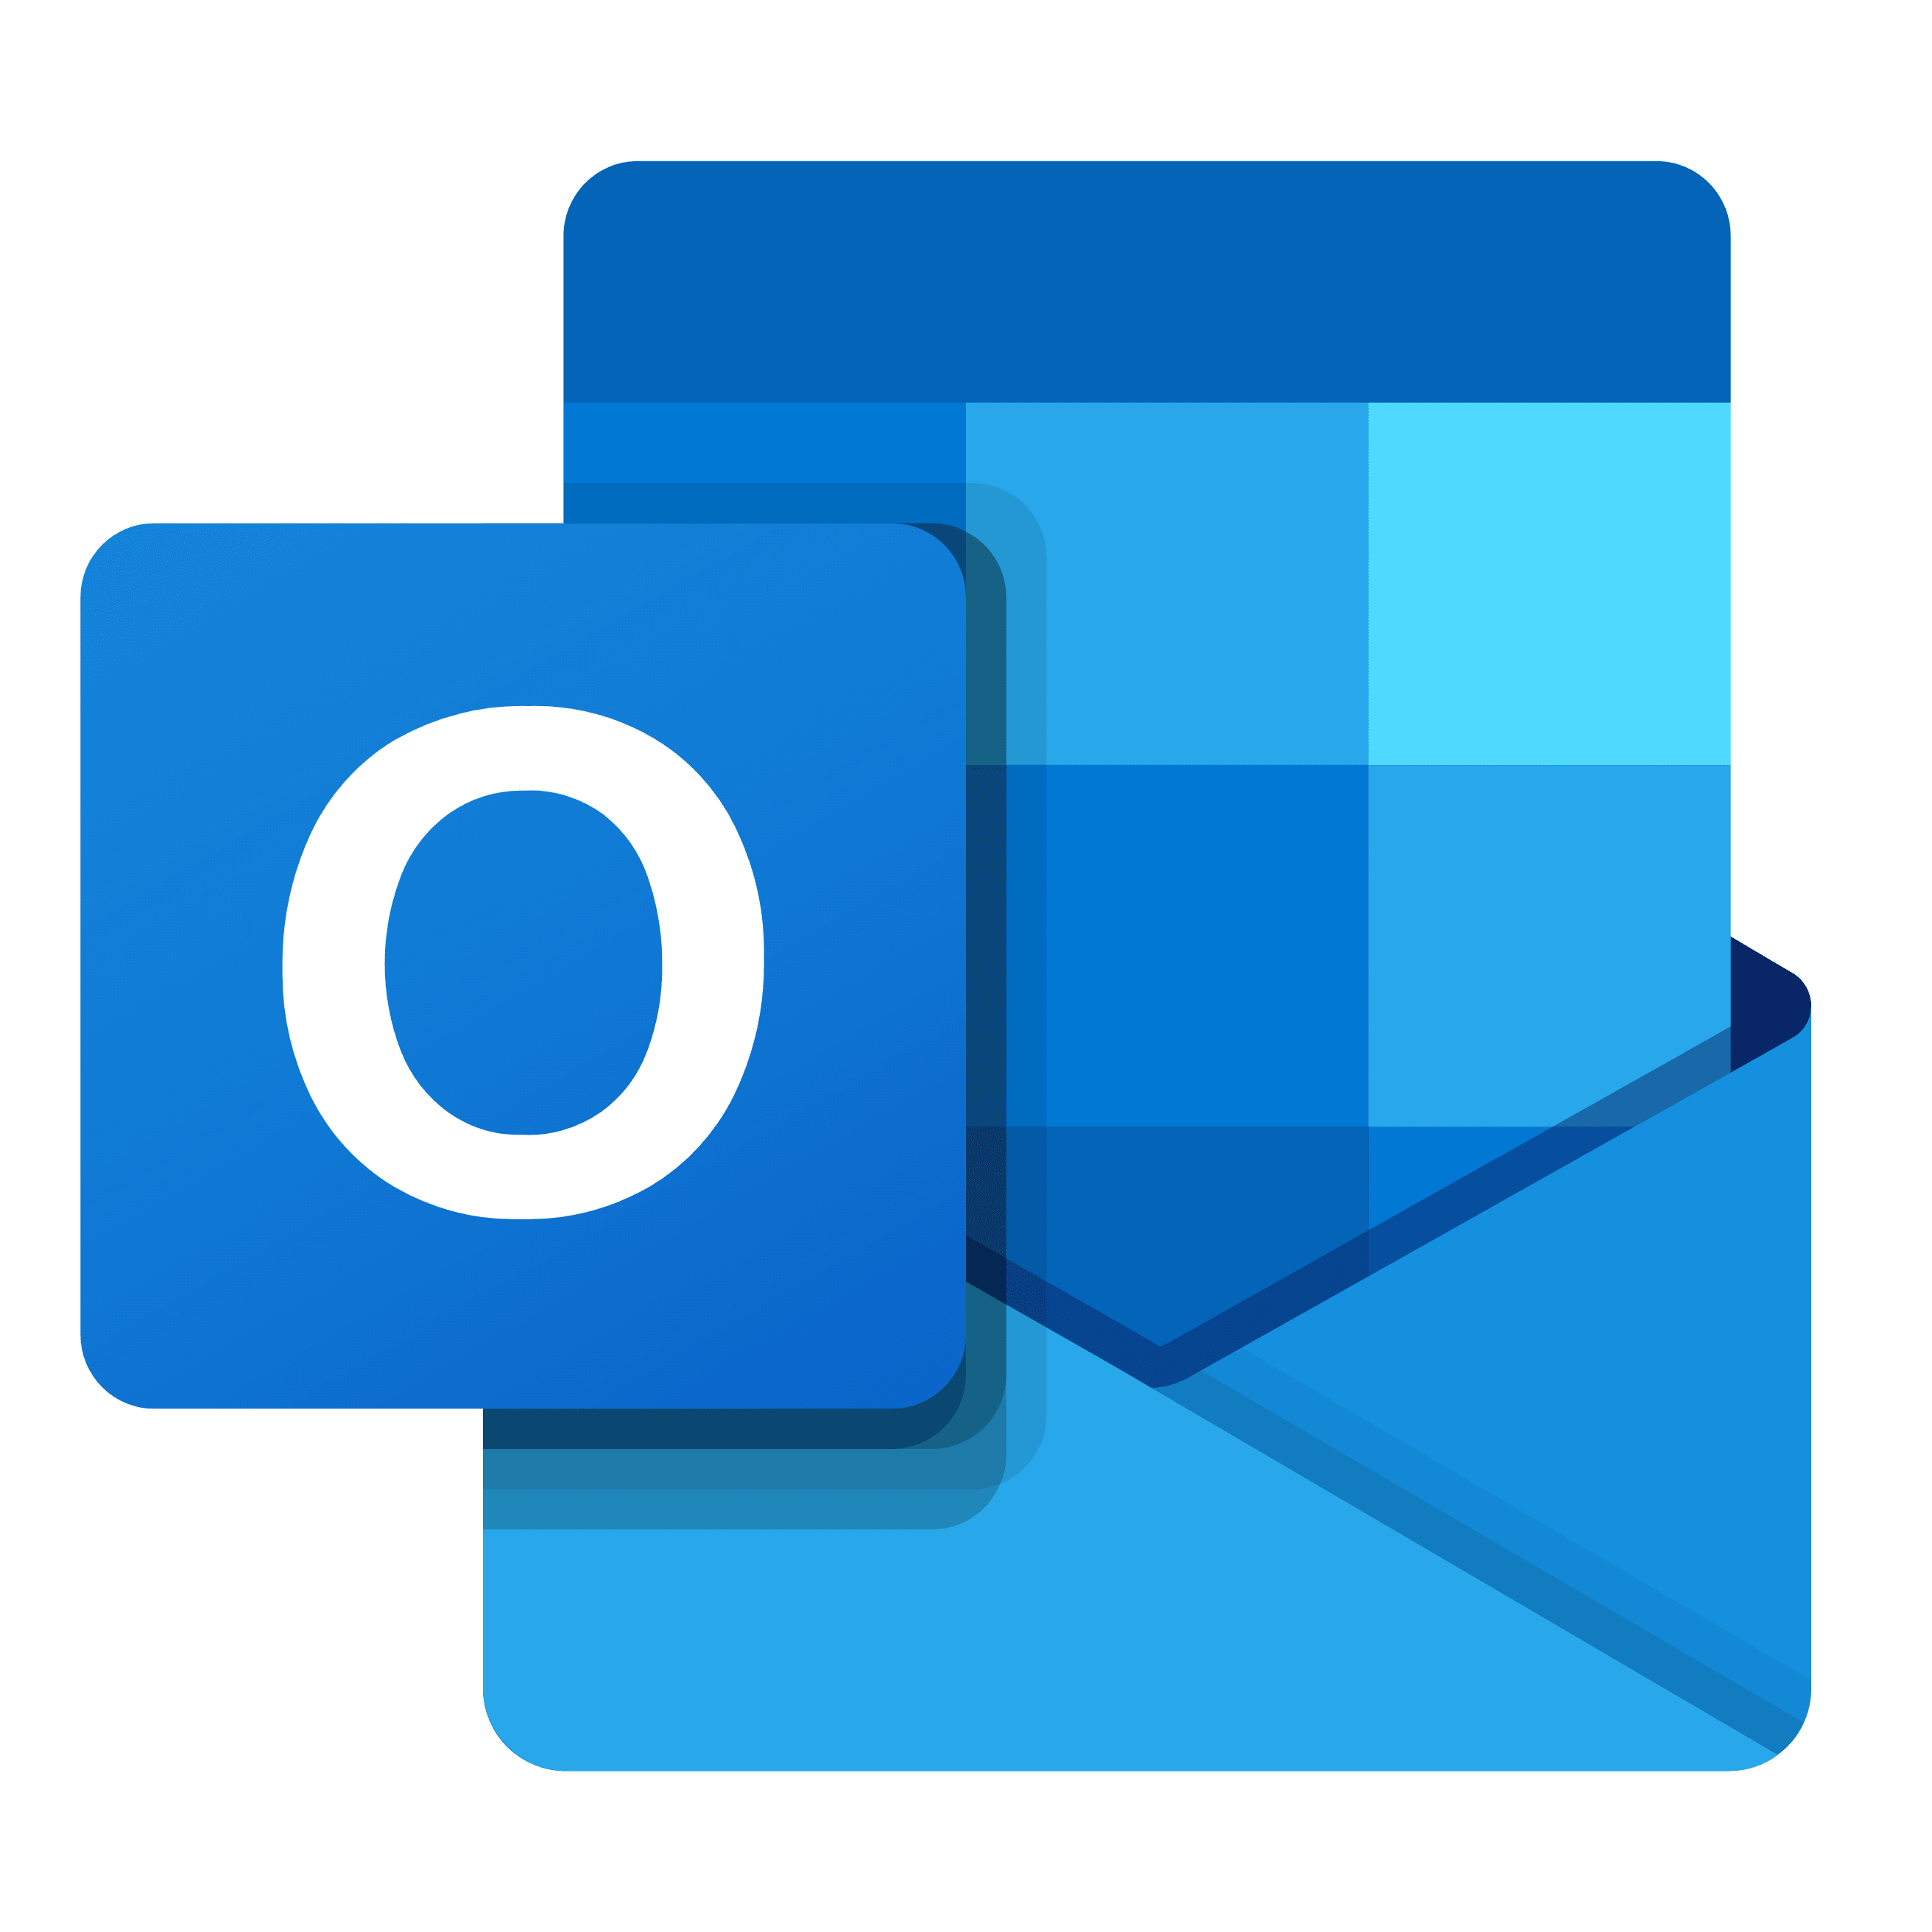 Outlook logo - new